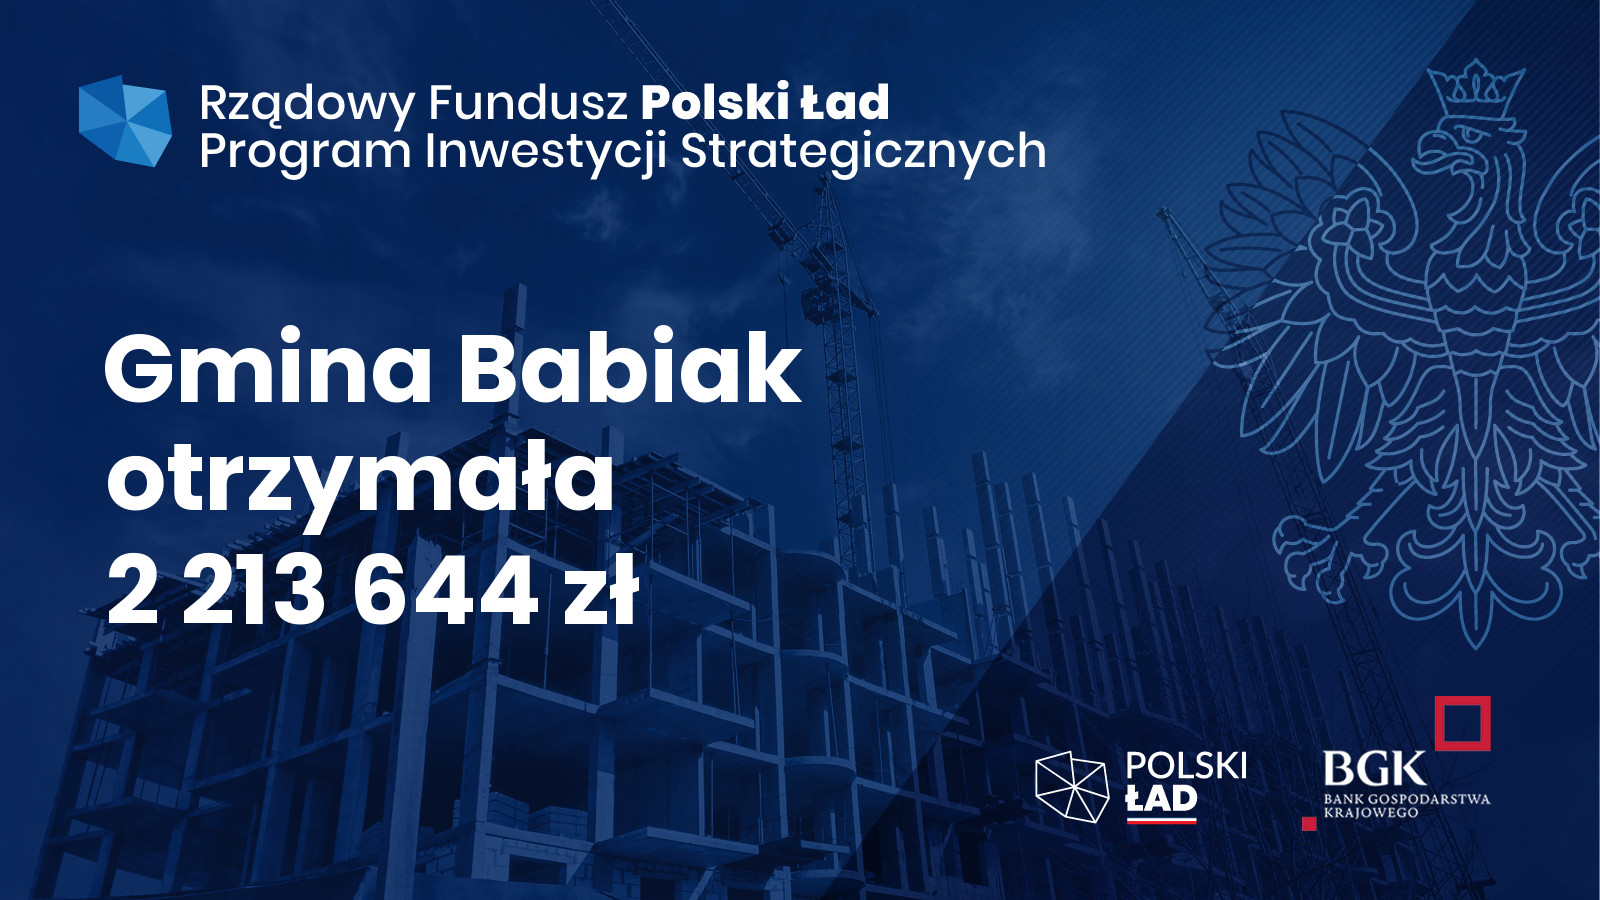 Informacja o przyznaniu dofinansowania w wysokości 2.213.644,00 zł w ramach Rządowego Funduszu Inwestycji Strategicznych - Polski Ład.